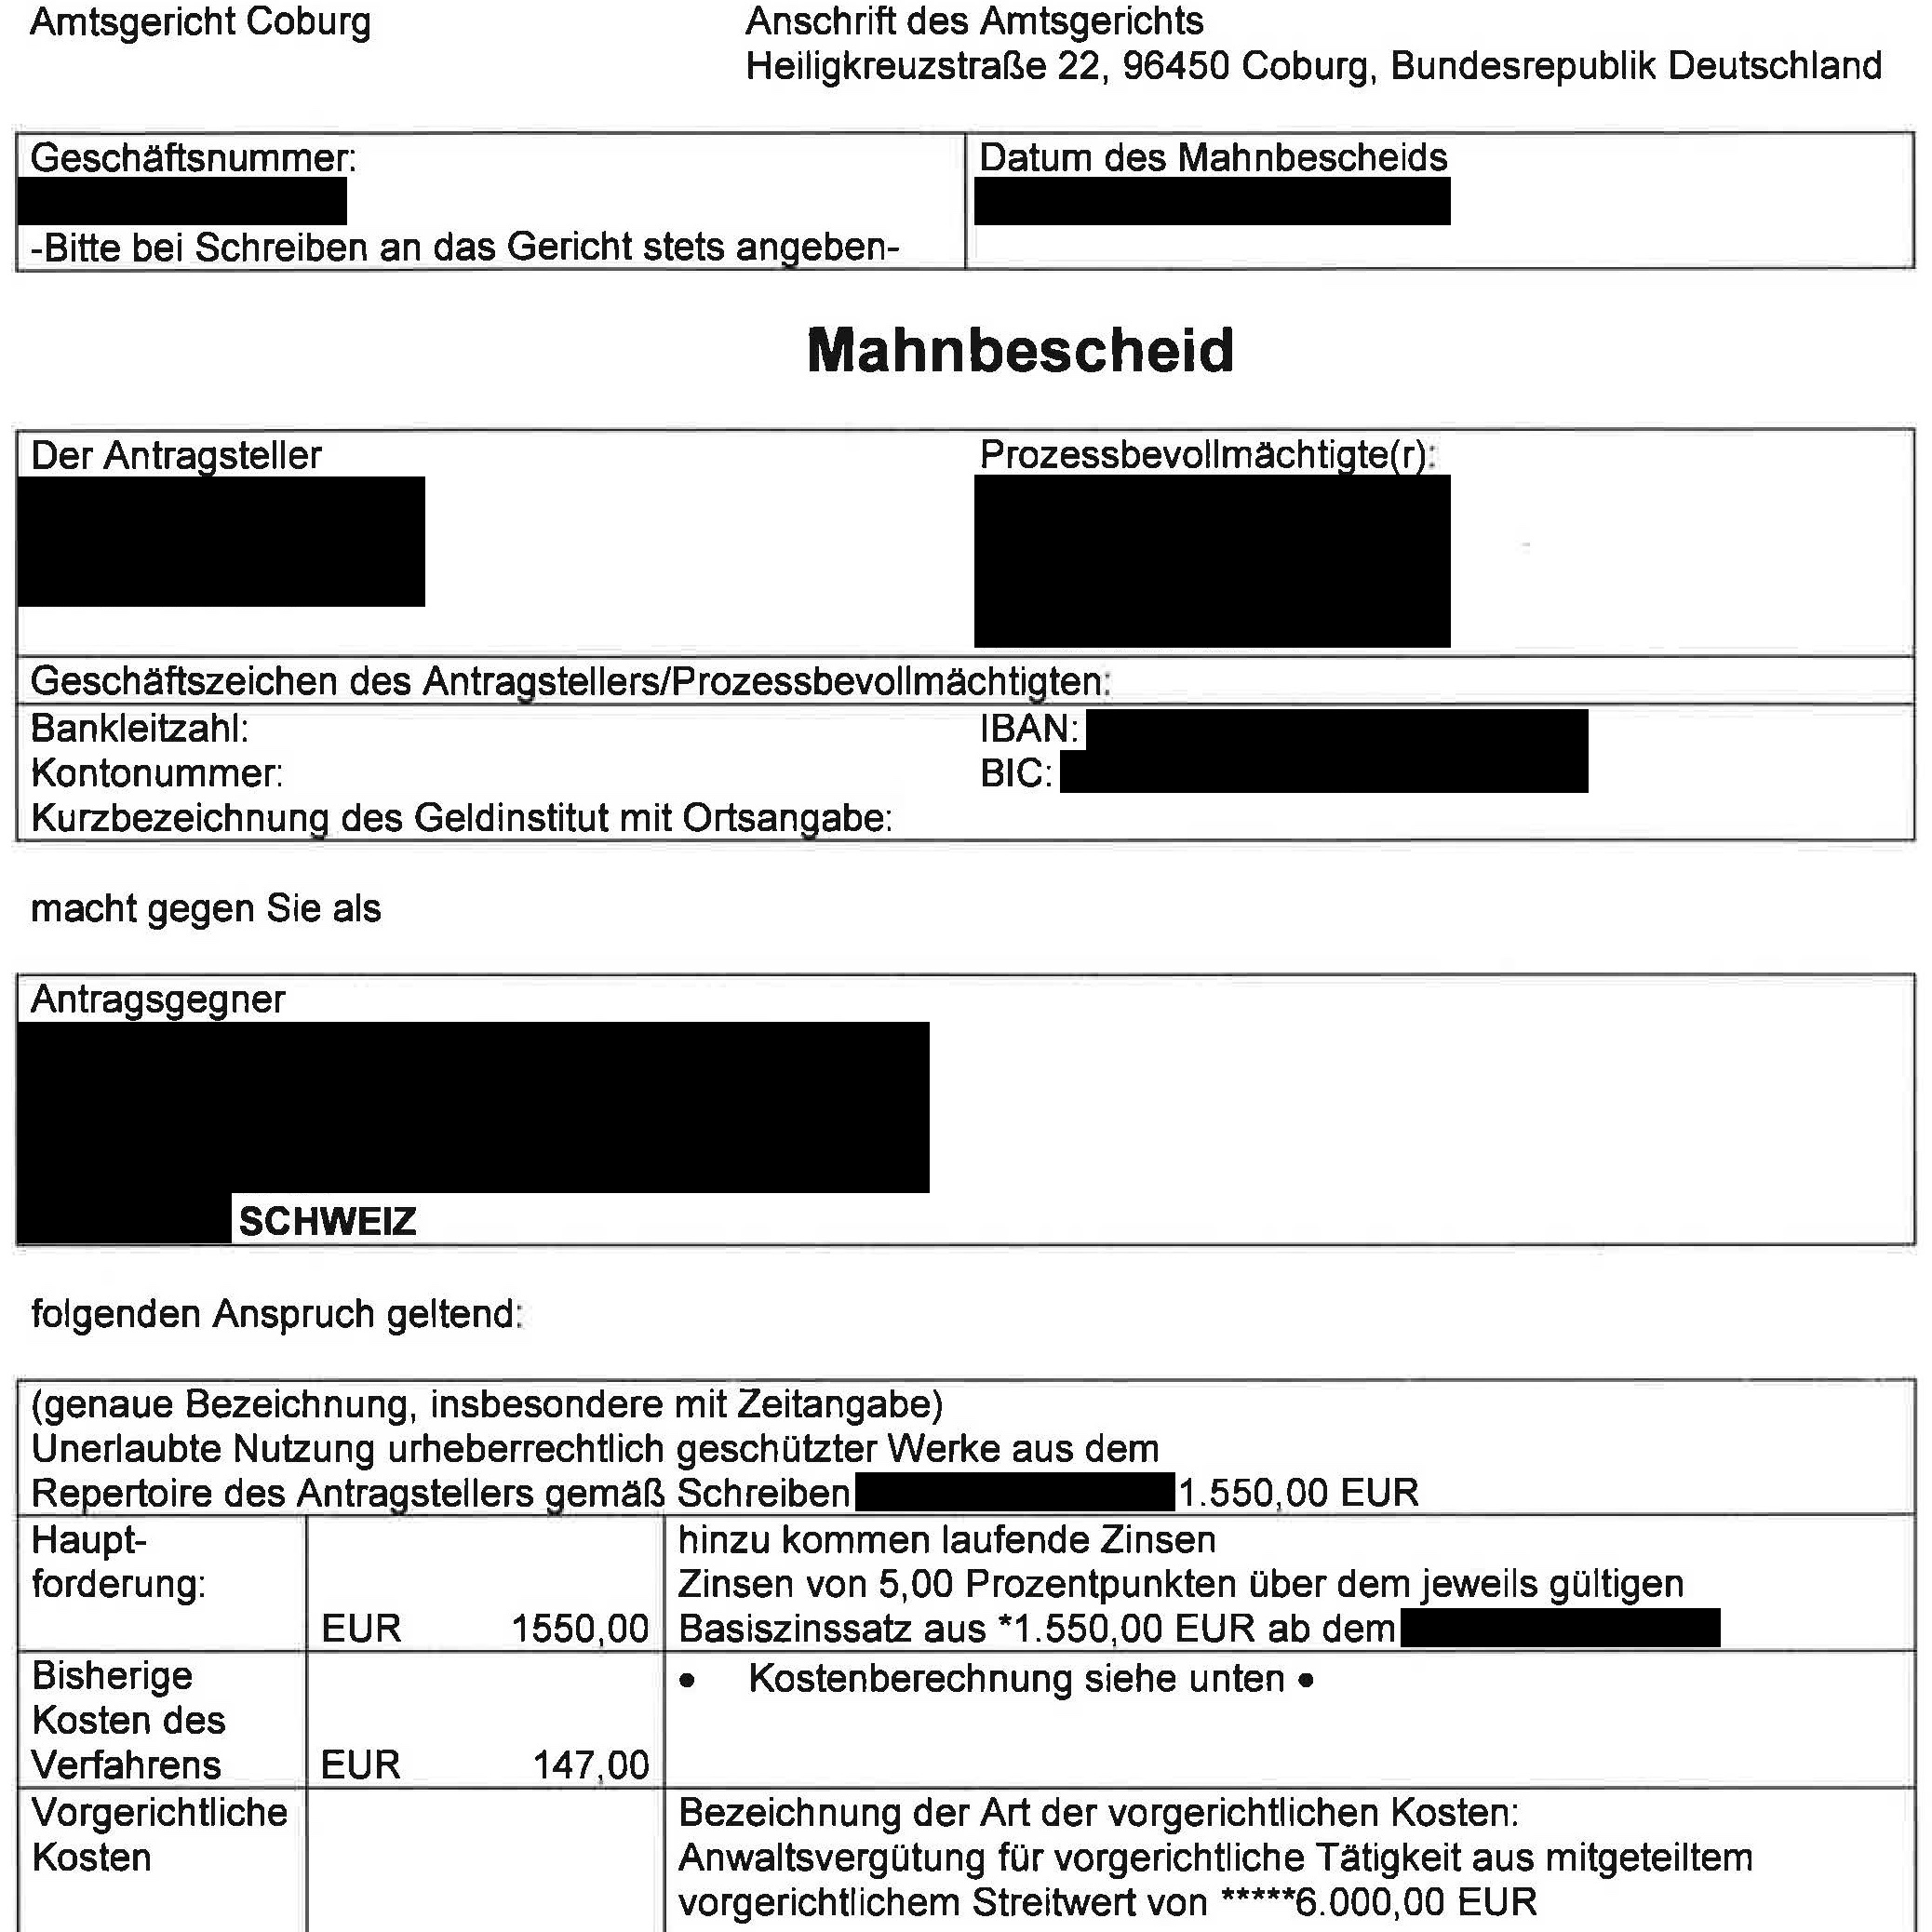 Dokument: Beispiel für einen deutschen Mahnbescheid (Teil von Seite 1)